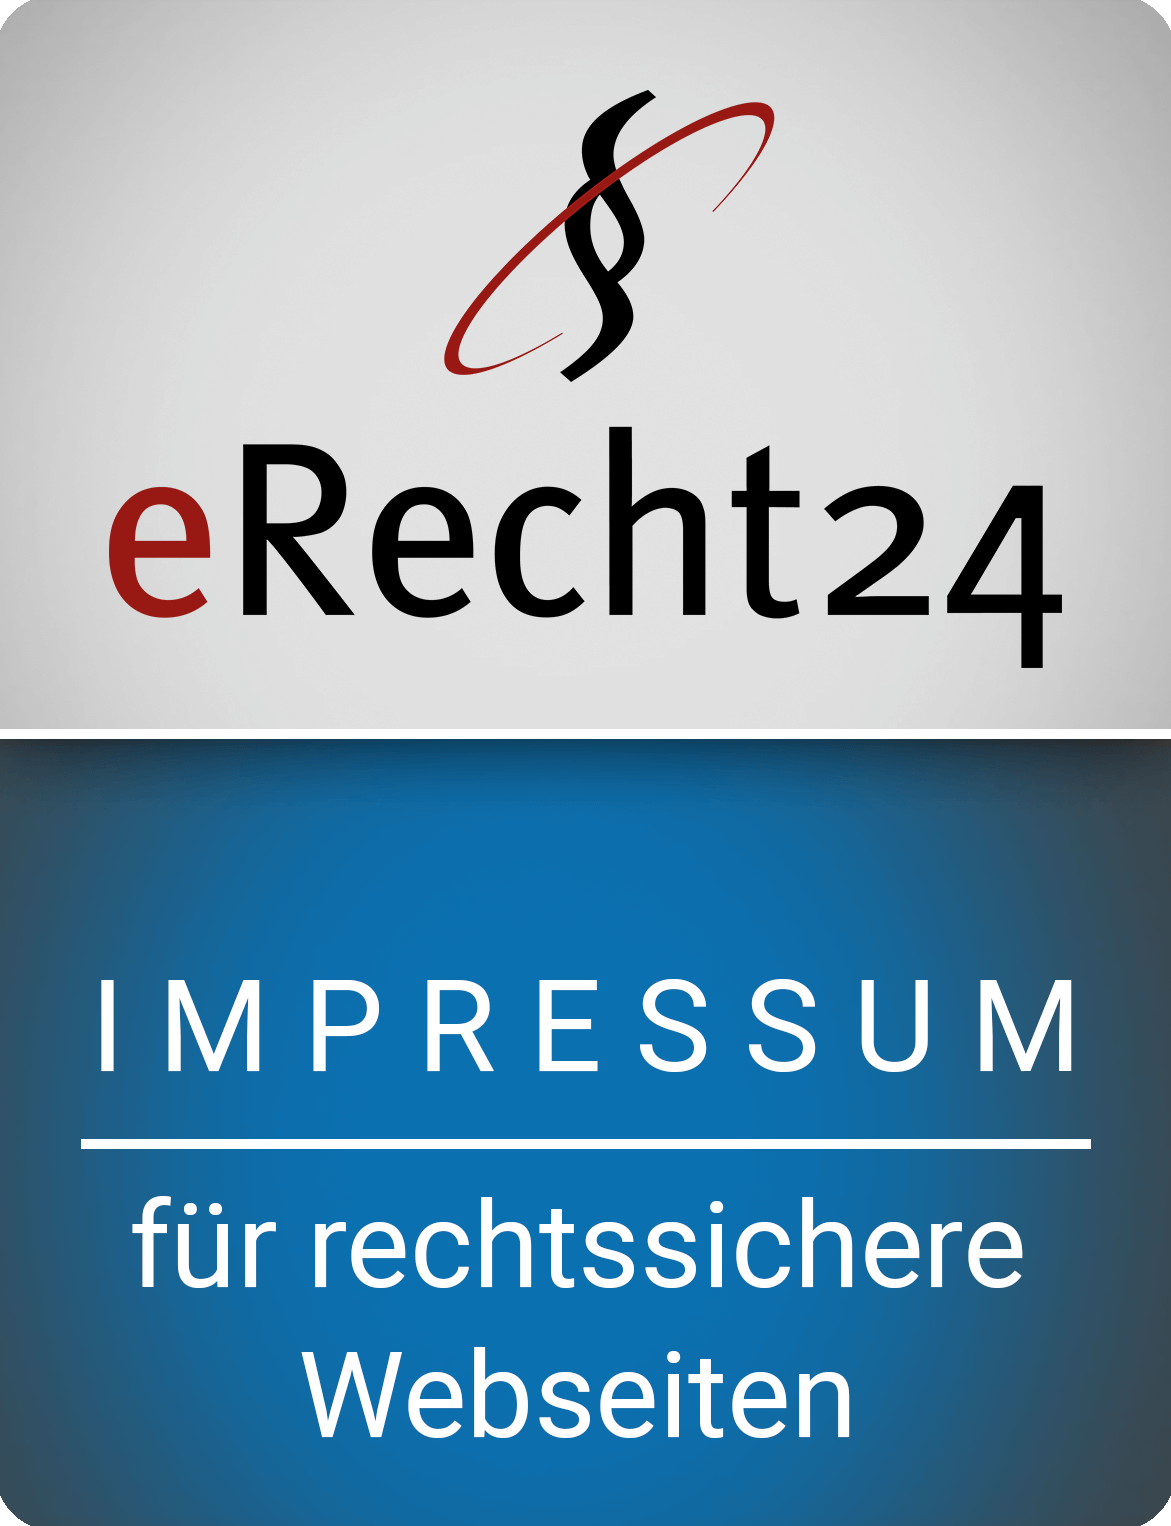 erecht24-siegel-impressum-blau-gross